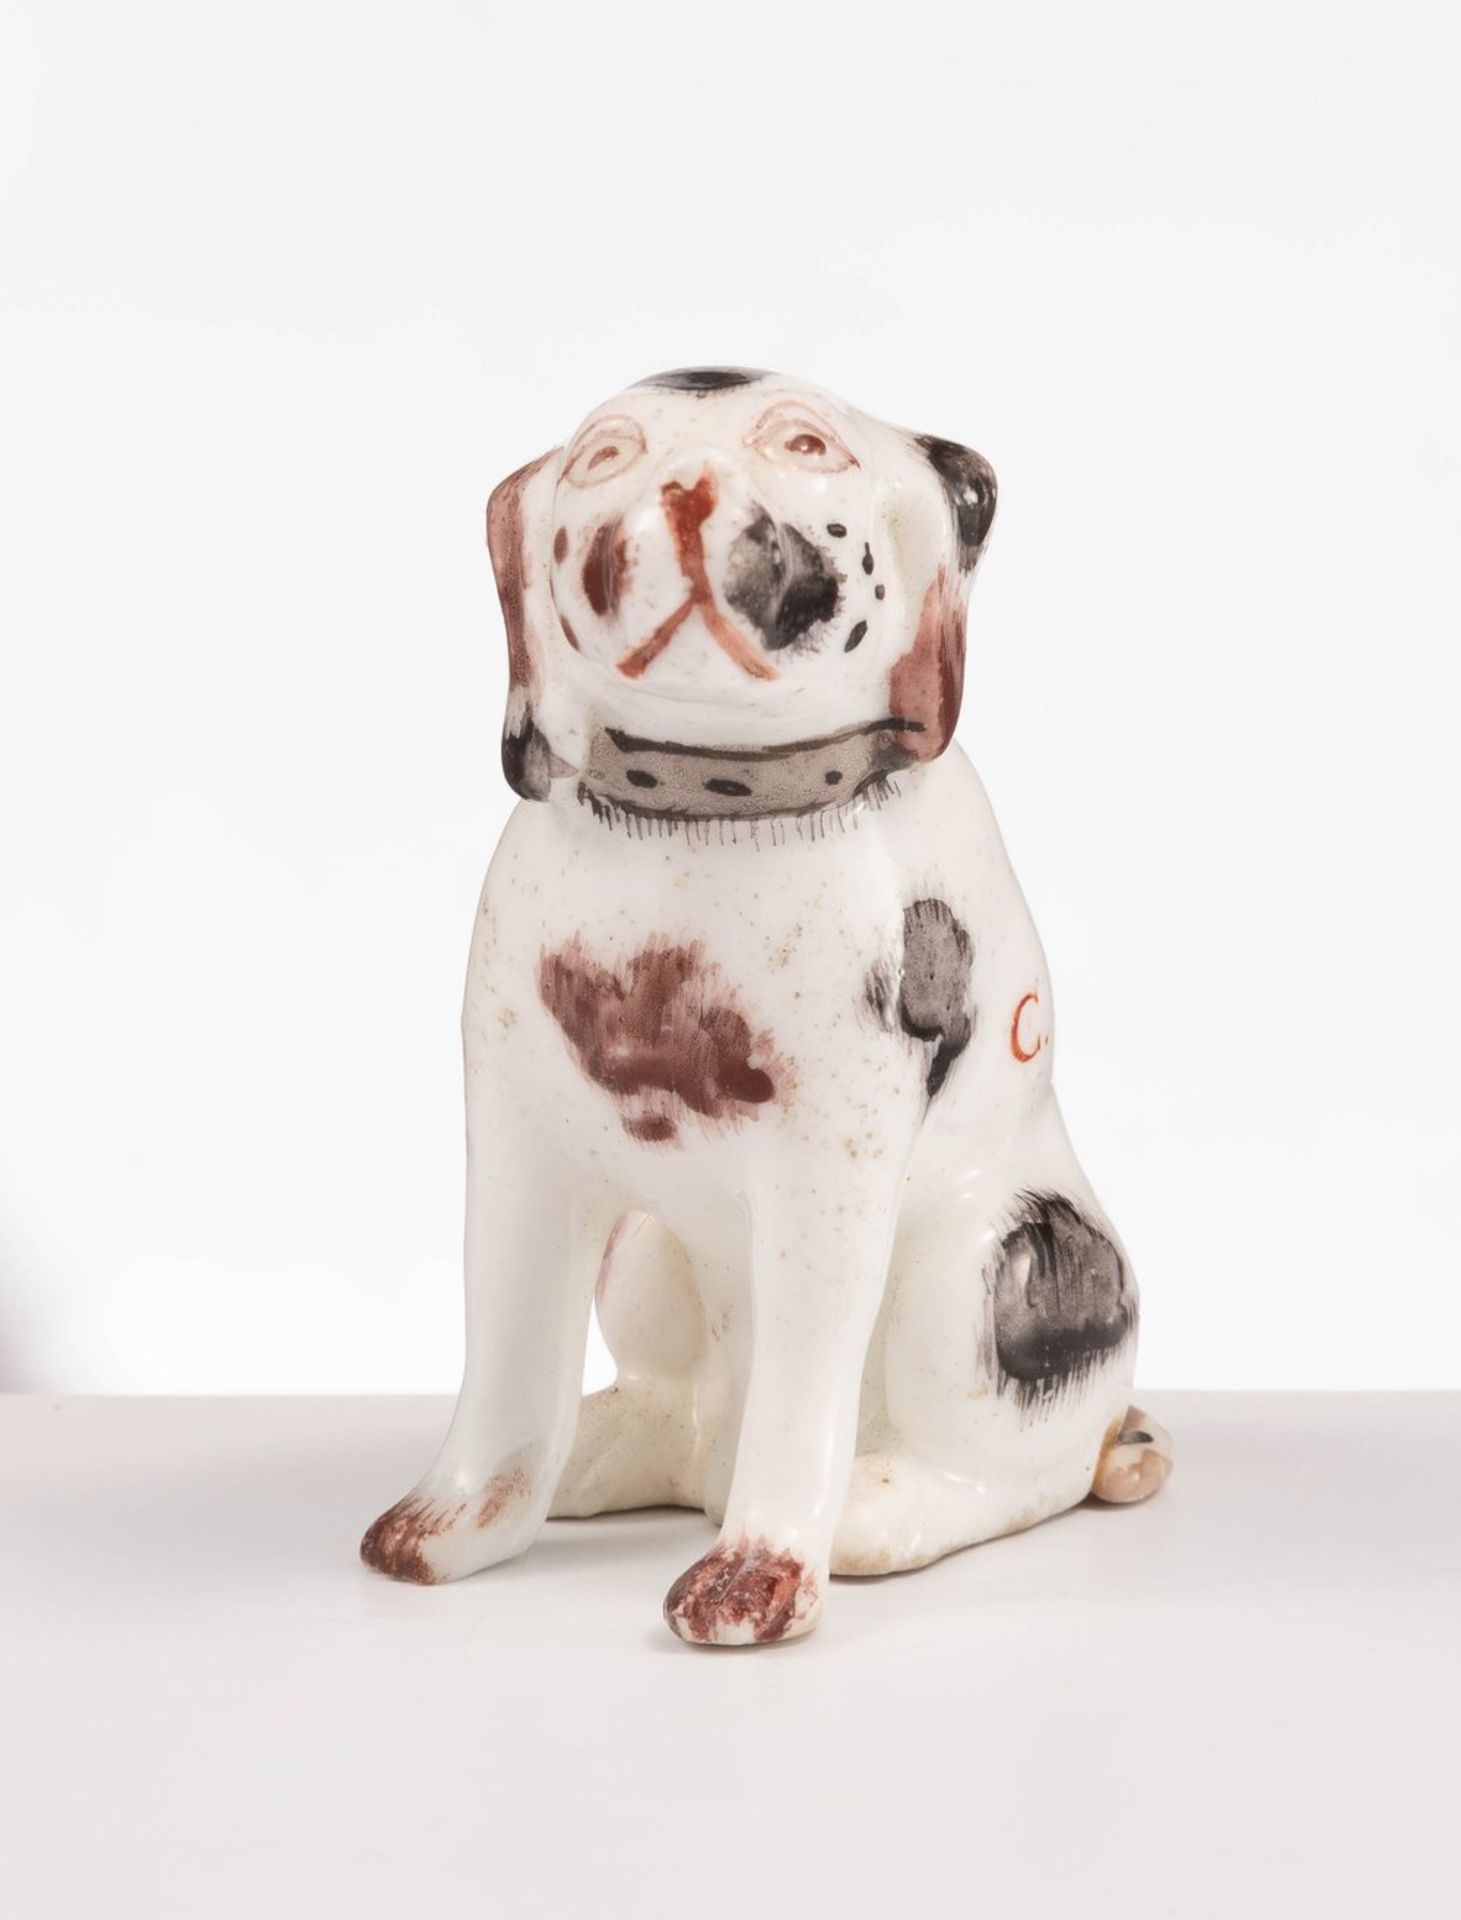 Kleiner sitzender HundWohl Meissen, 18. Jh.Kleiner, wohl einen Beagle darstellender - Bild 2 aus 4